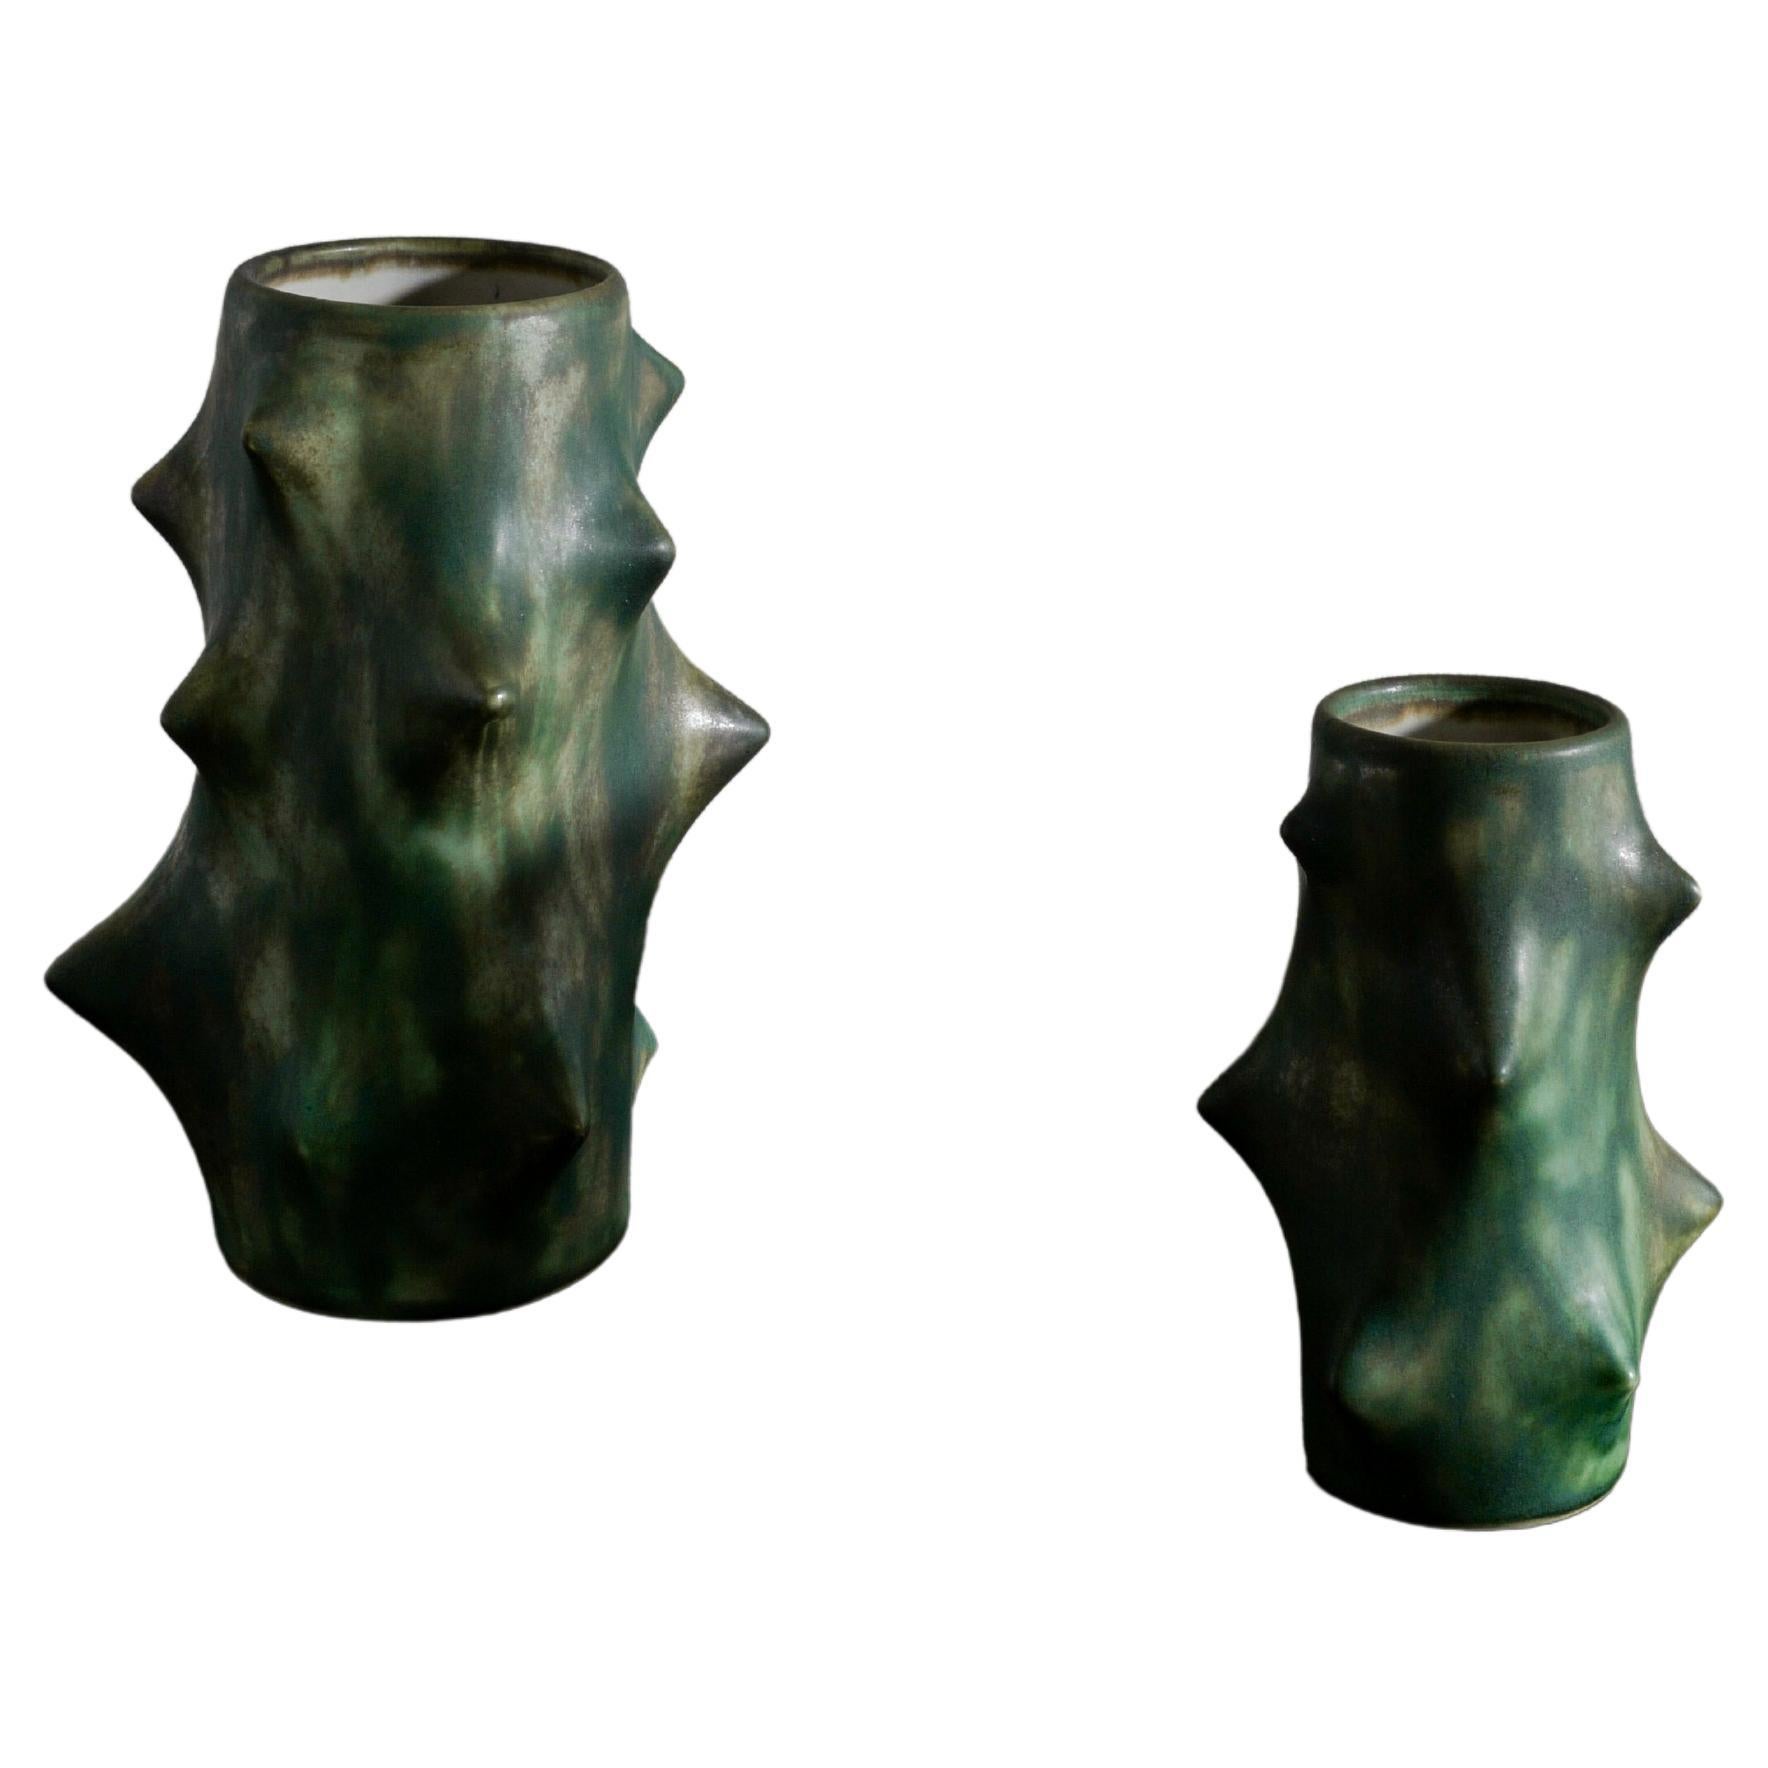 Pair of Dark Green Knud Basse Thorn Vases Produced by Michael Andersen, Denmark